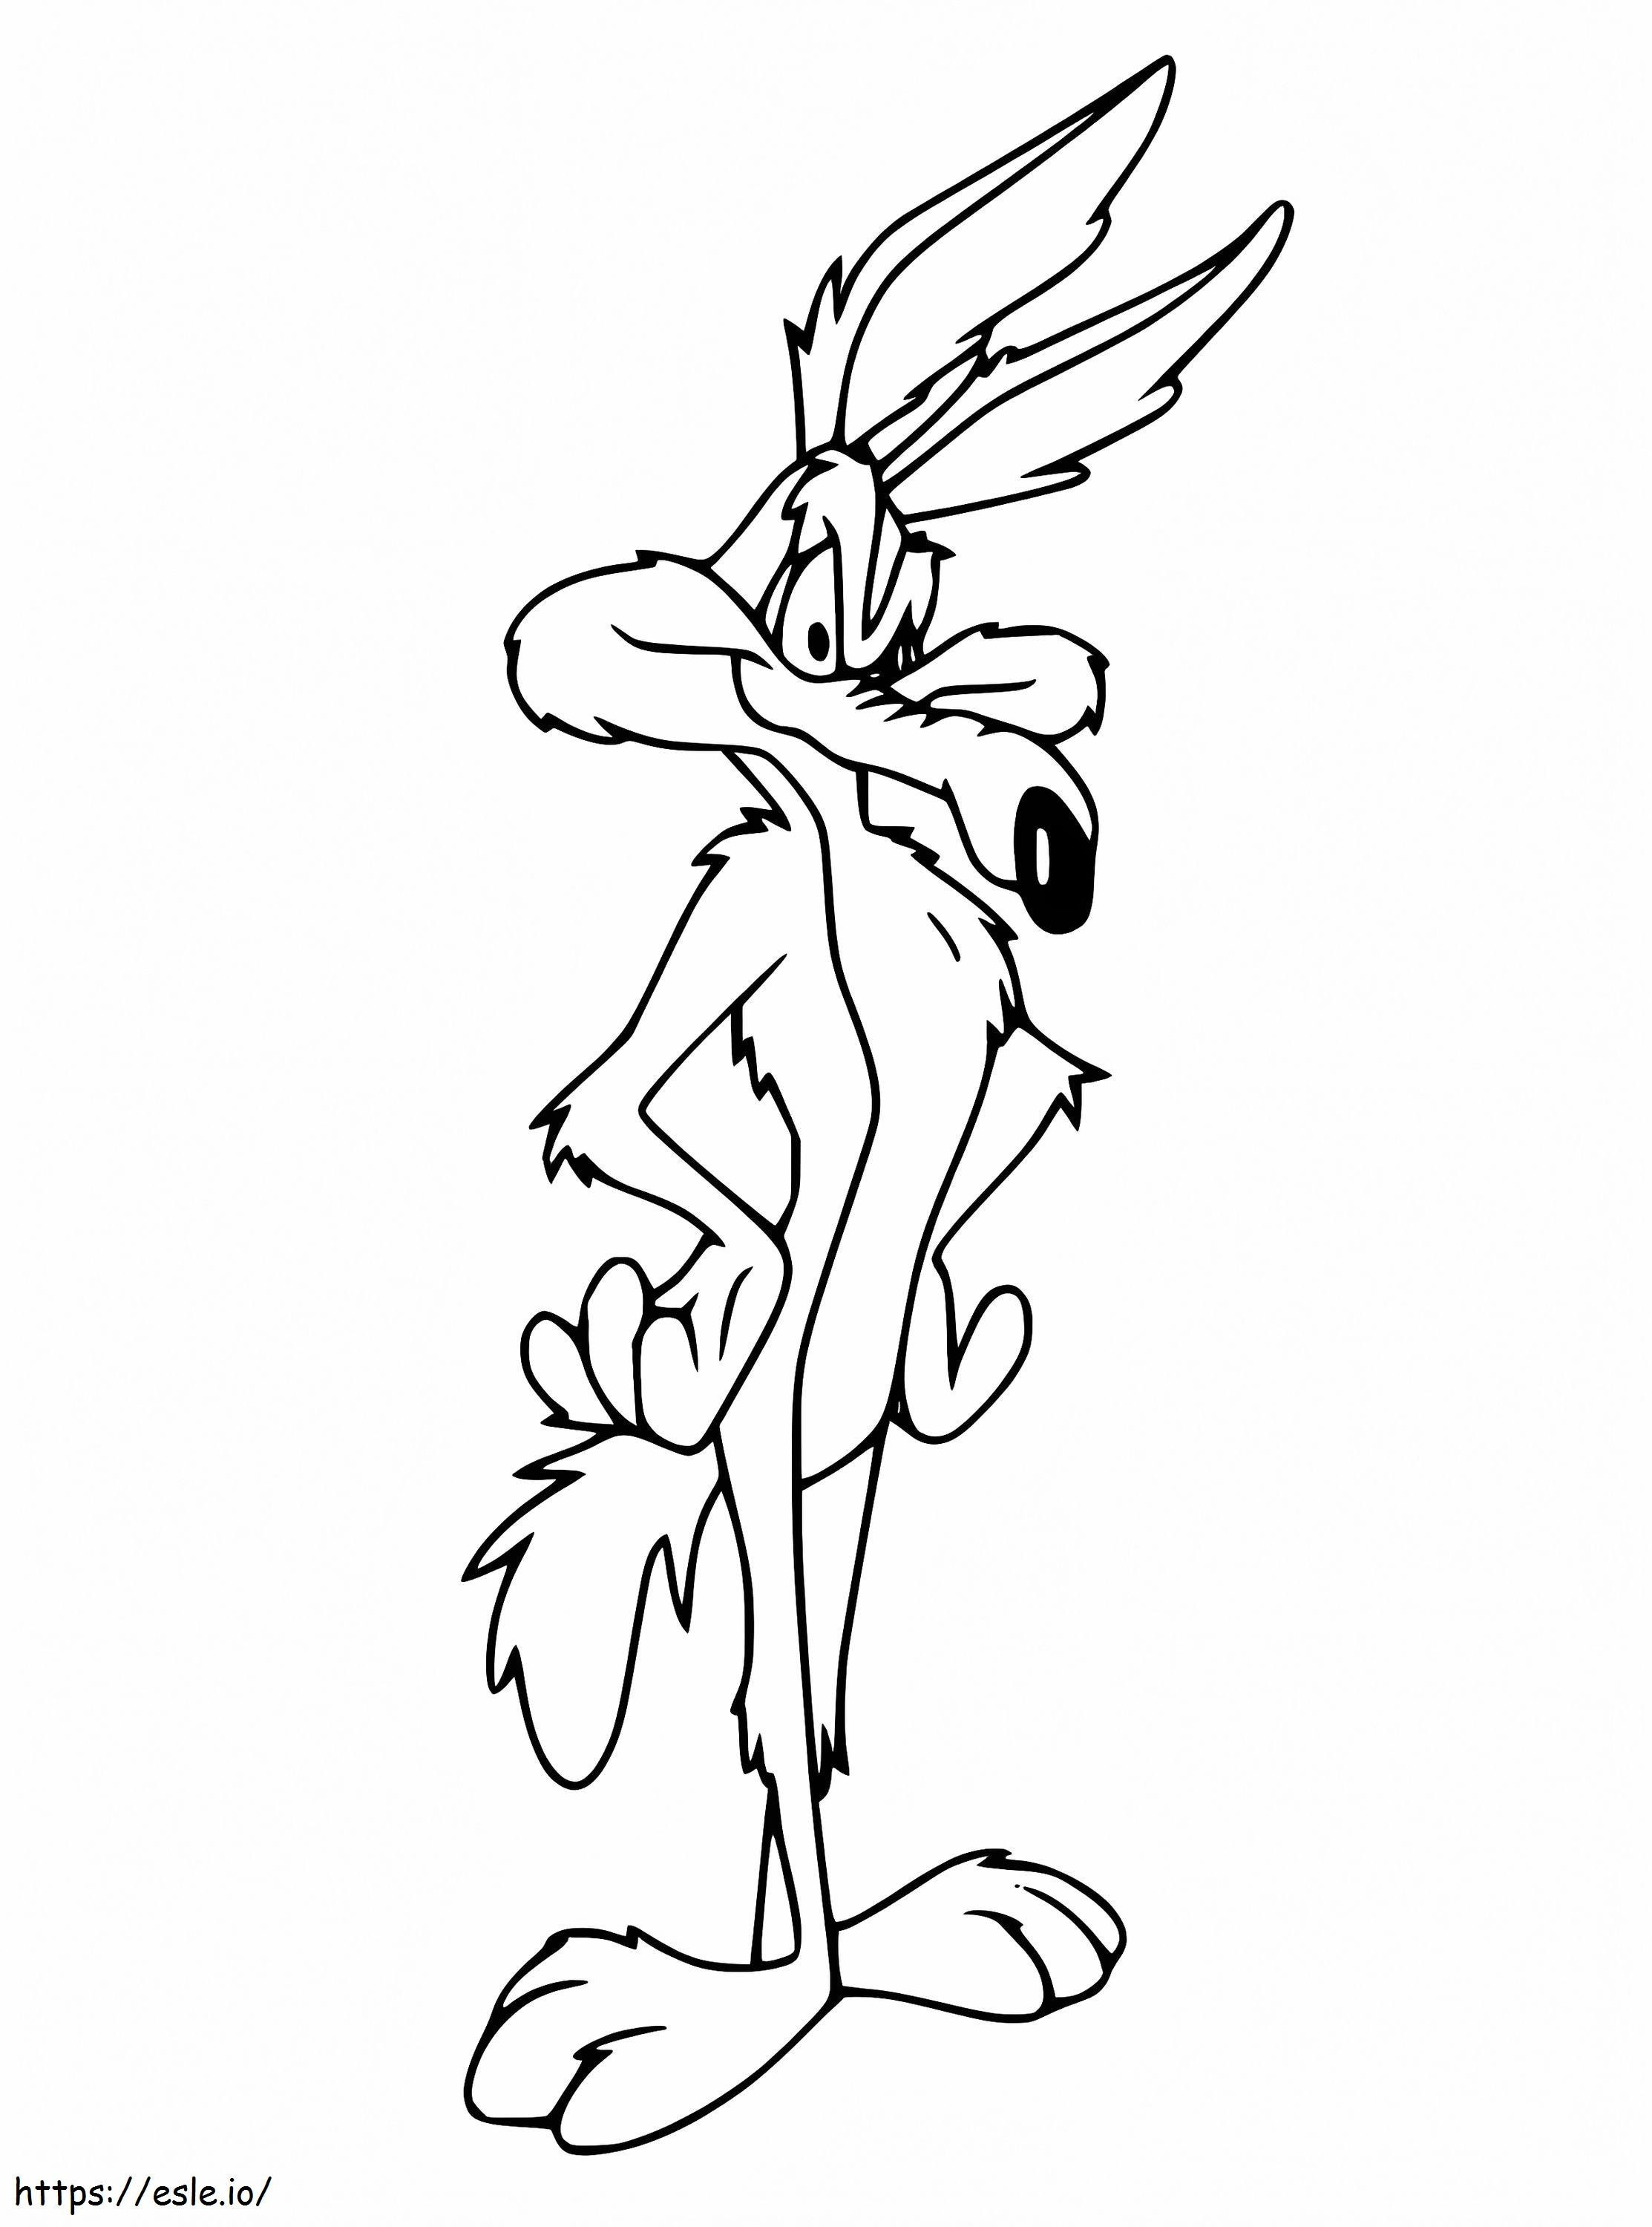 Wile E Coyote Dari Looney Tunes Gambar Mewarnai